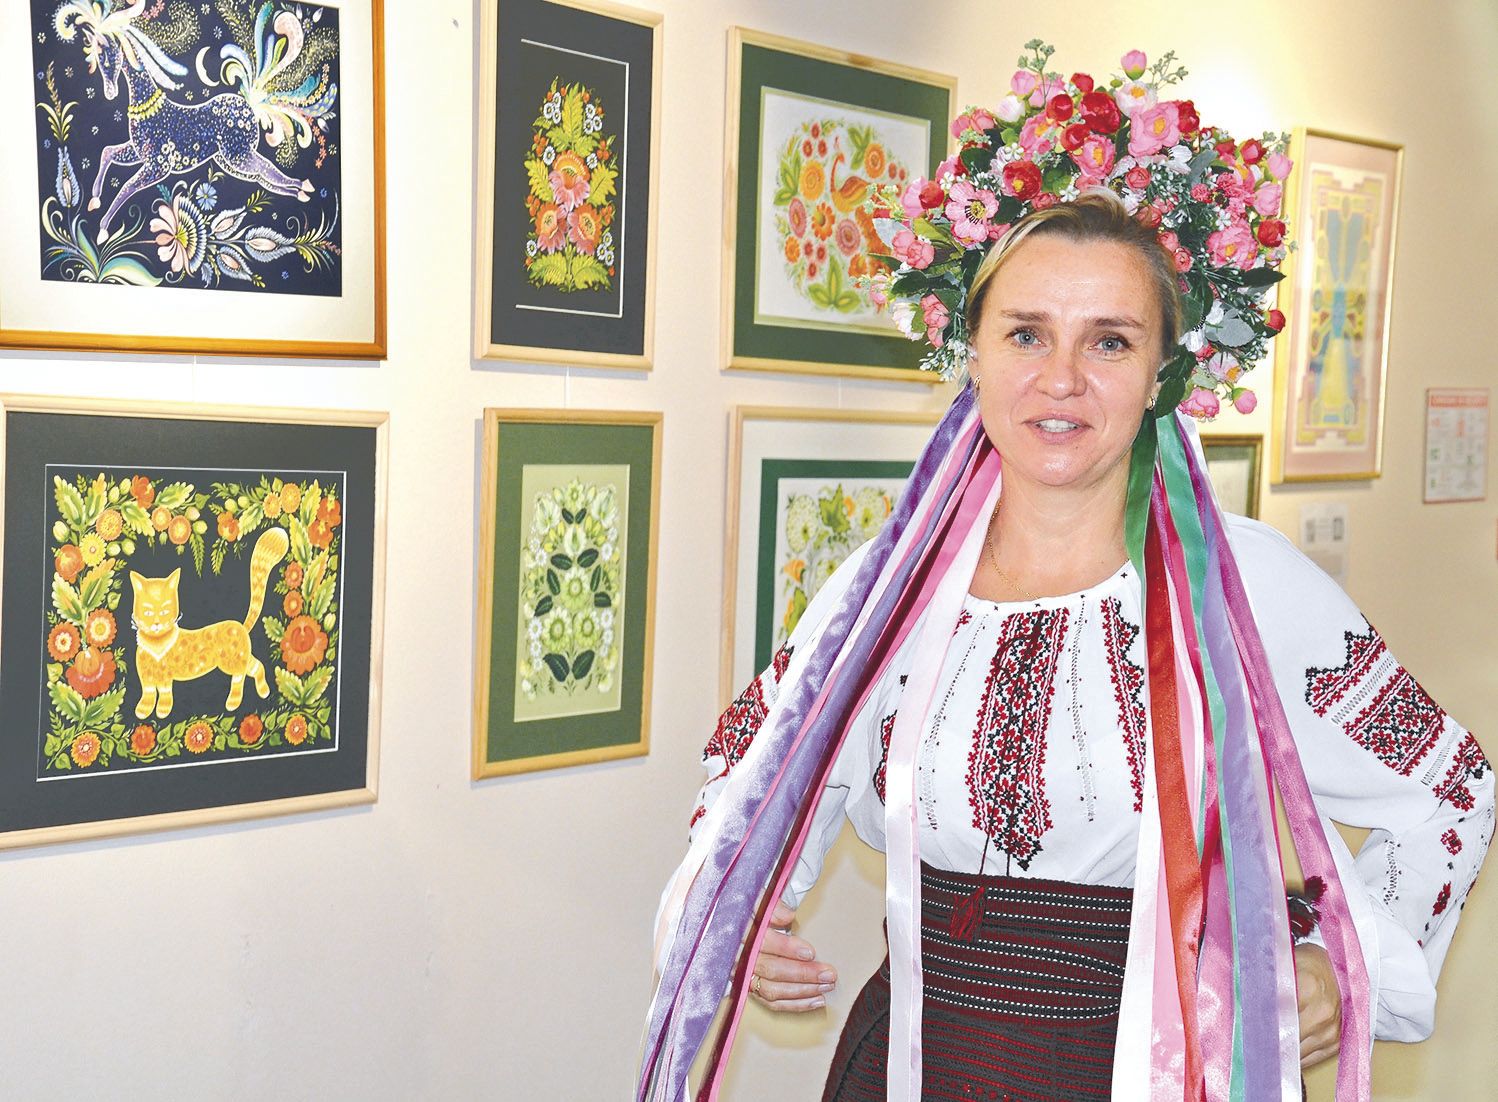 Nataliya Tretyachenko en costume traditionnel ukrainien pour clôturer l’exposition. Photos S.M.